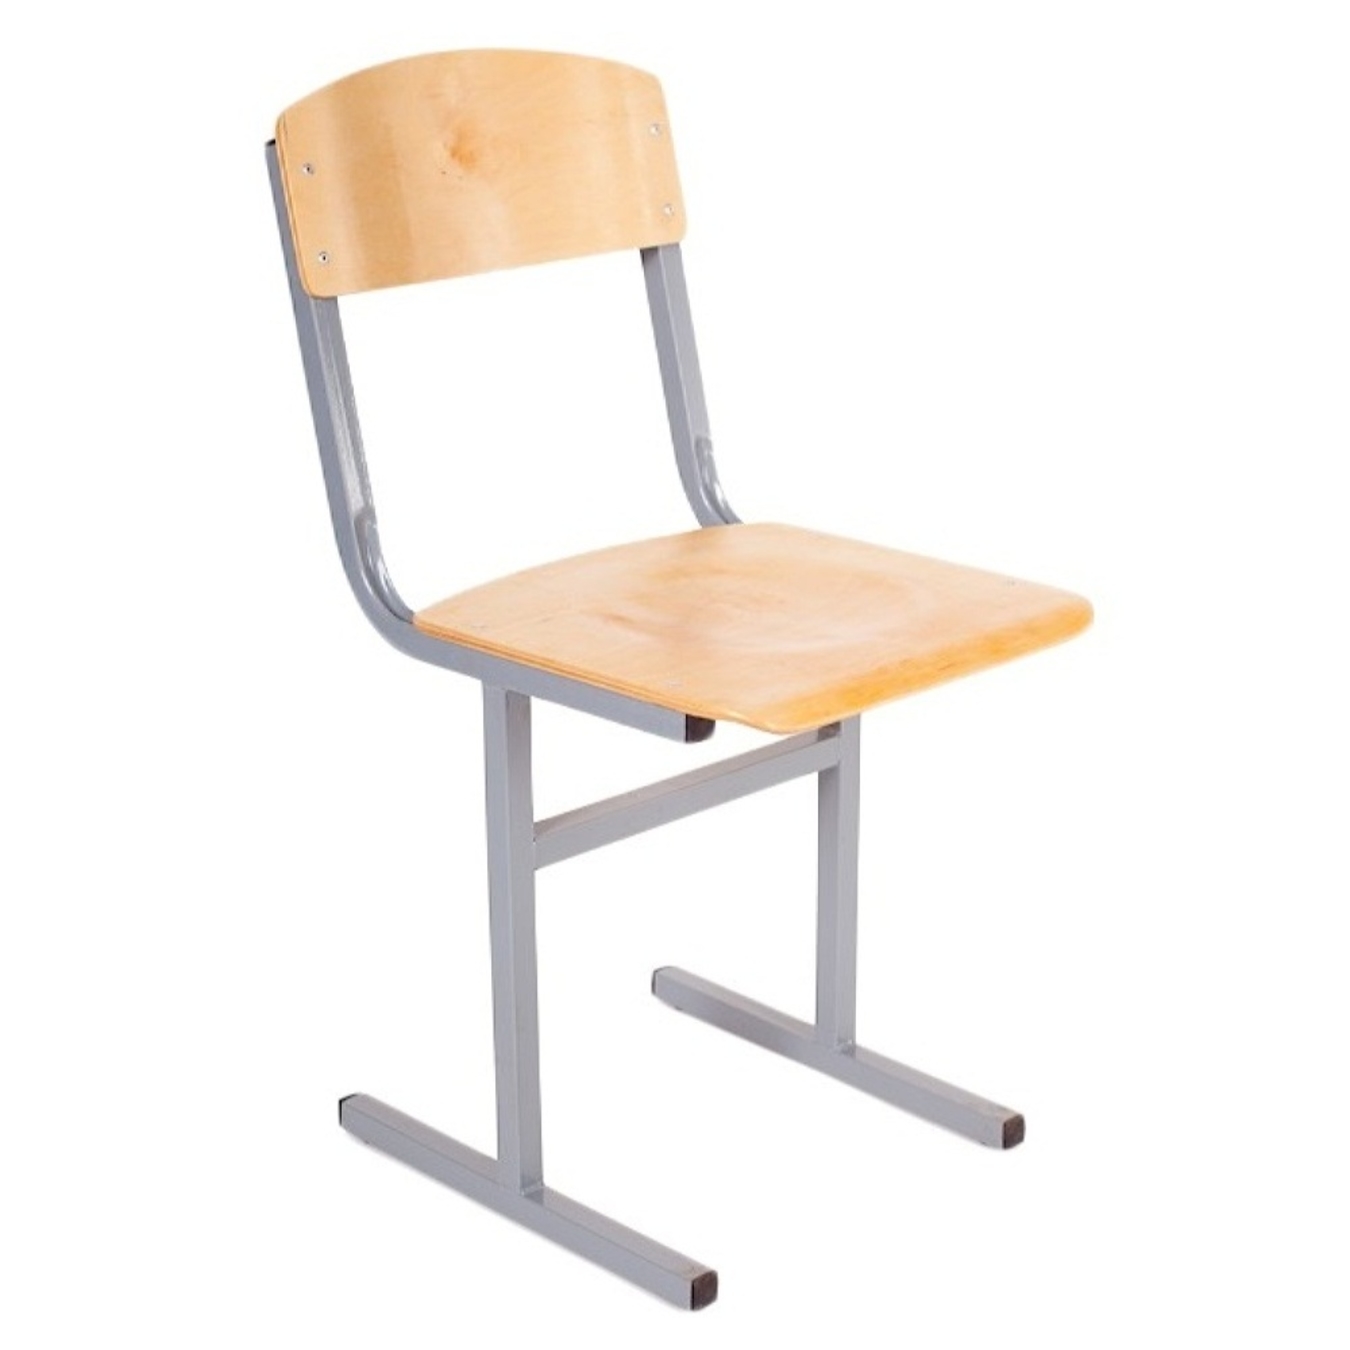 сиденье на школьный стул